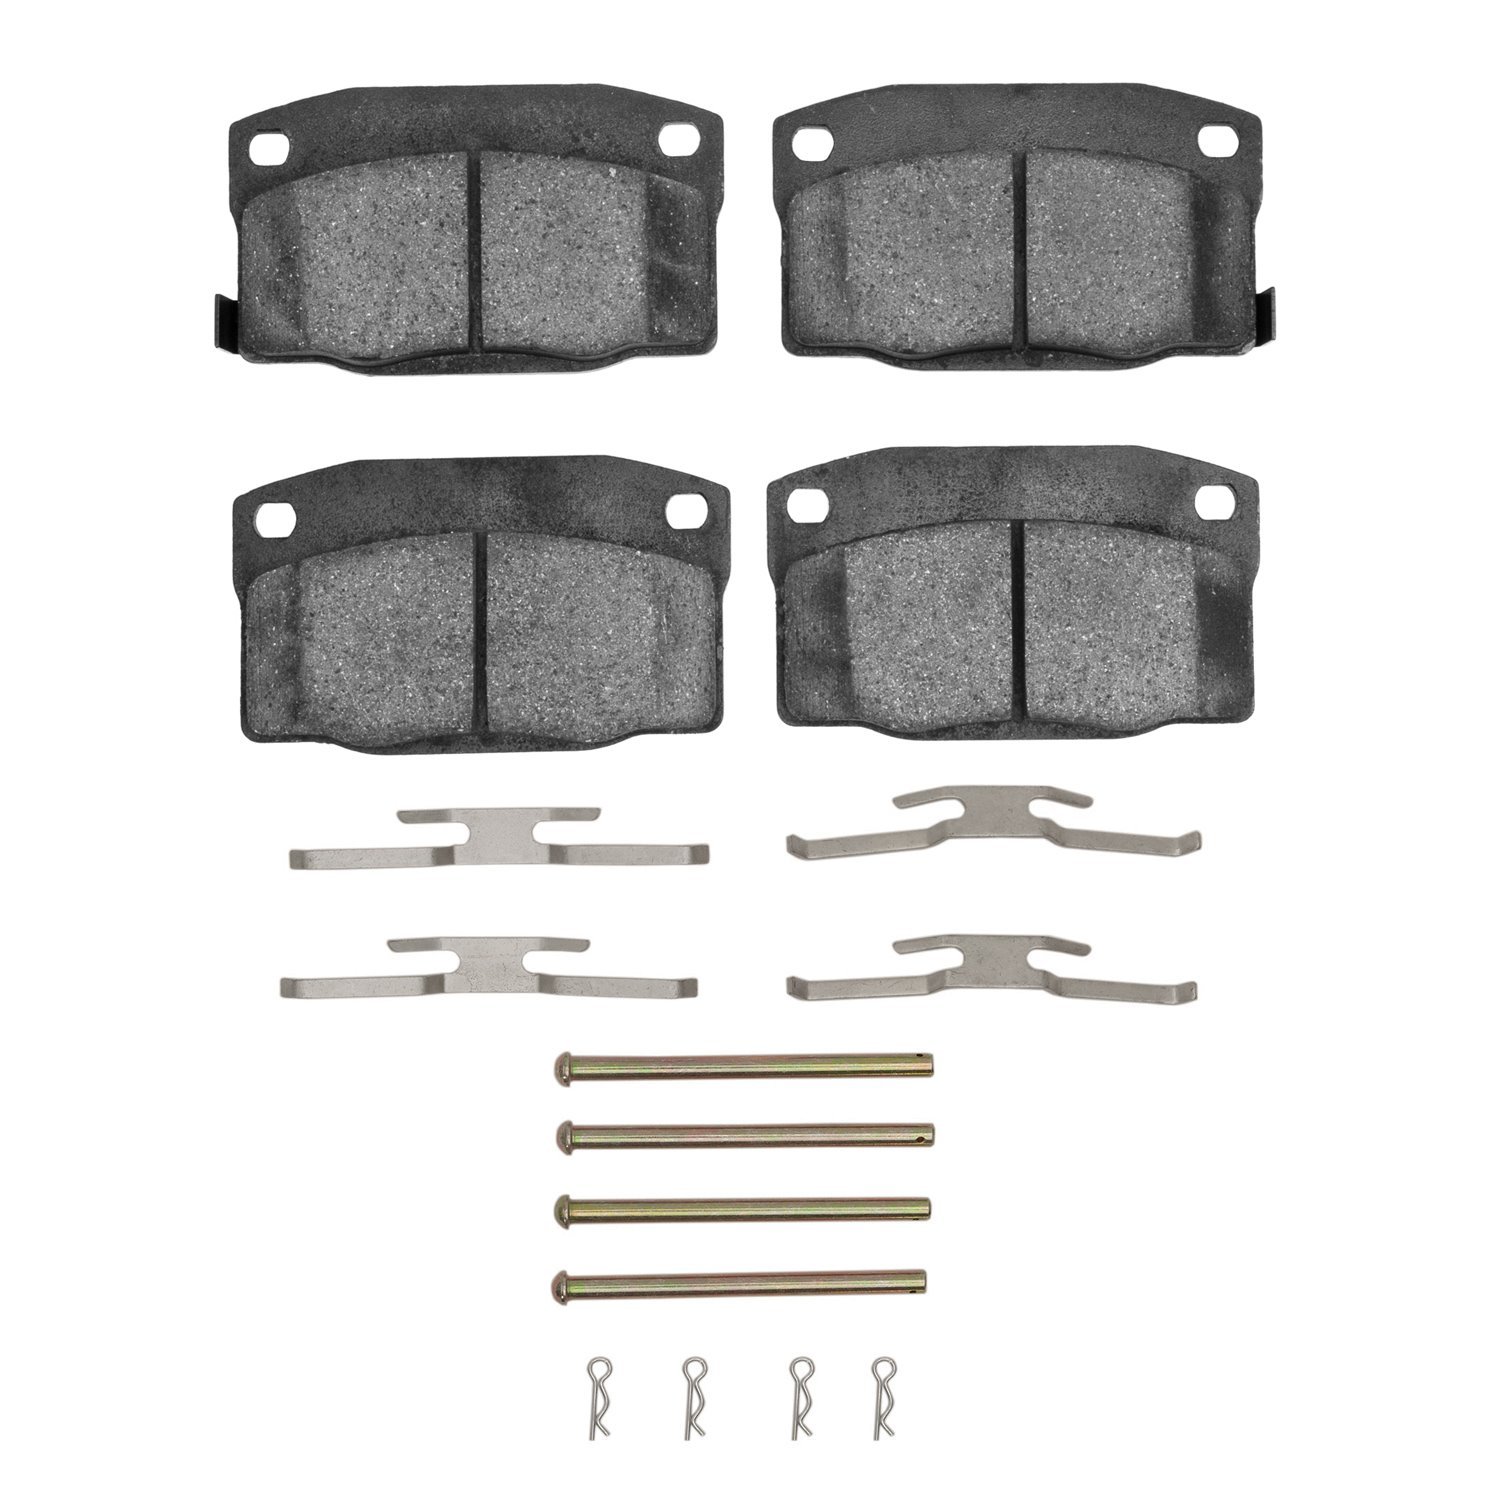 1311-0378-02 3000-Series Semi-Metallic Brake Pads & Hardware Kit, 1988-1989 GM, Position: Front